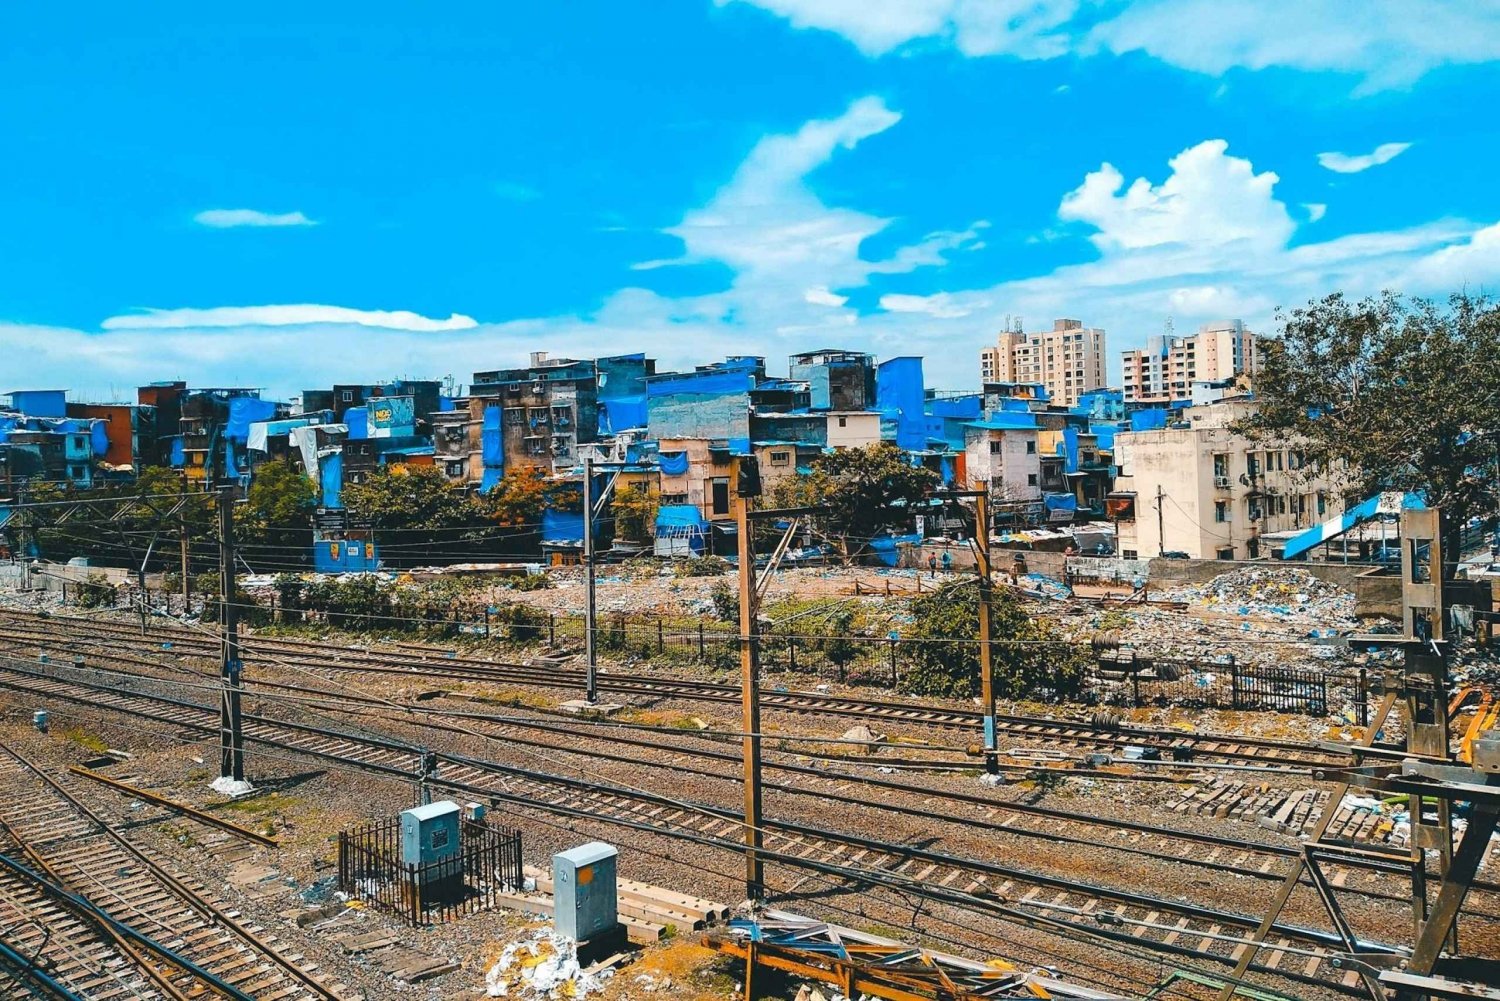 Dharavi - Utforsk det mest populære slumområdet i Slumdog Millionaire